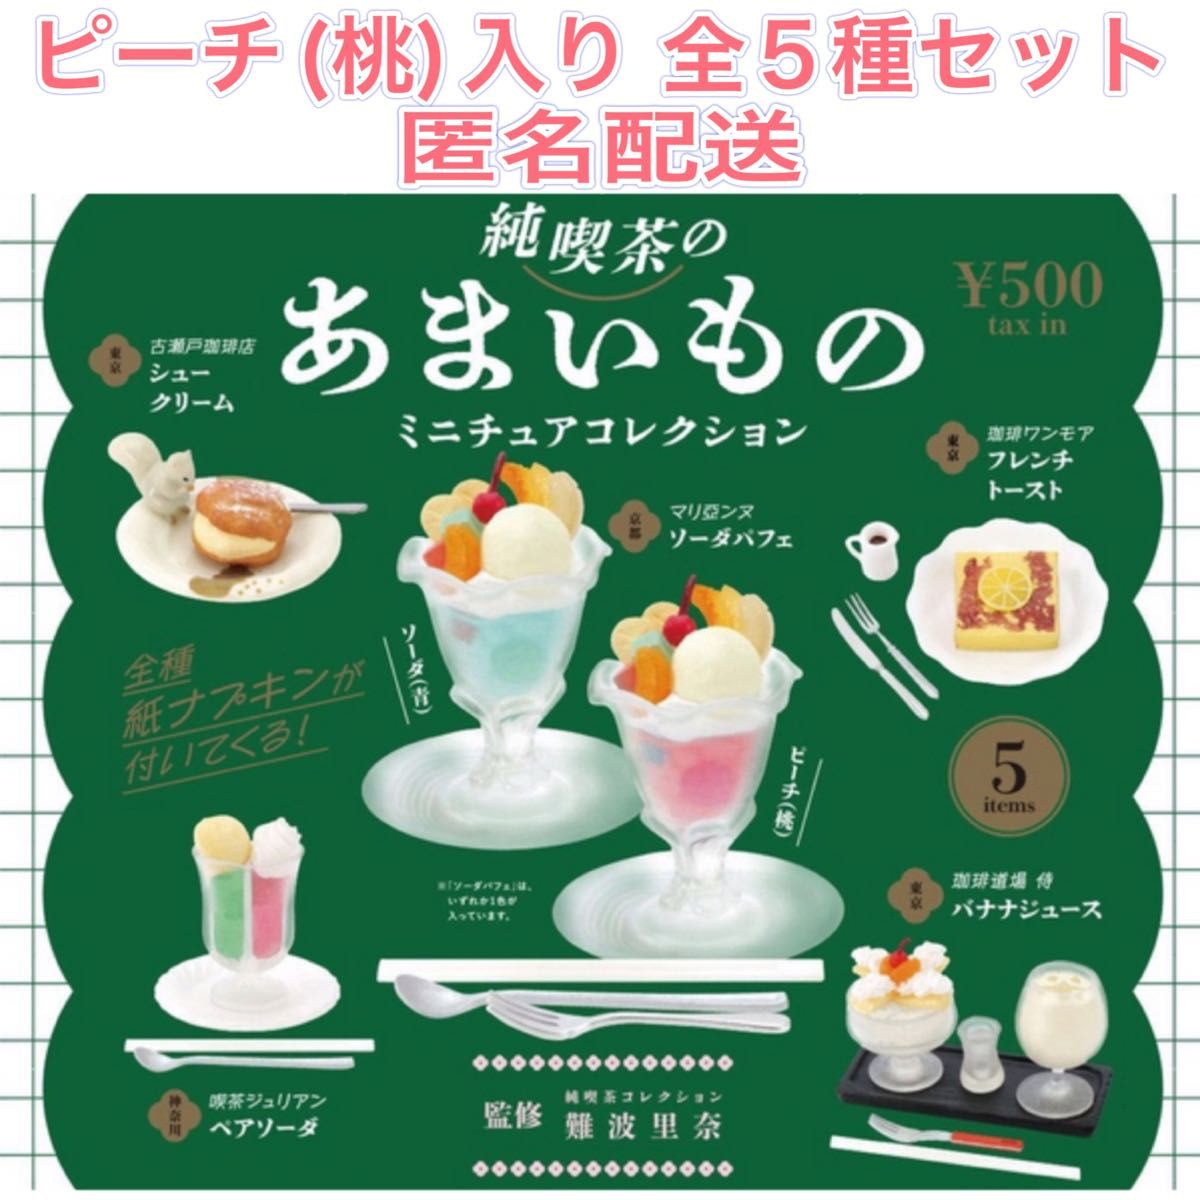 純喫茶のあまいもの ミニチュアコレクション ピーチ(桃)入り 全5種 ガチャ 